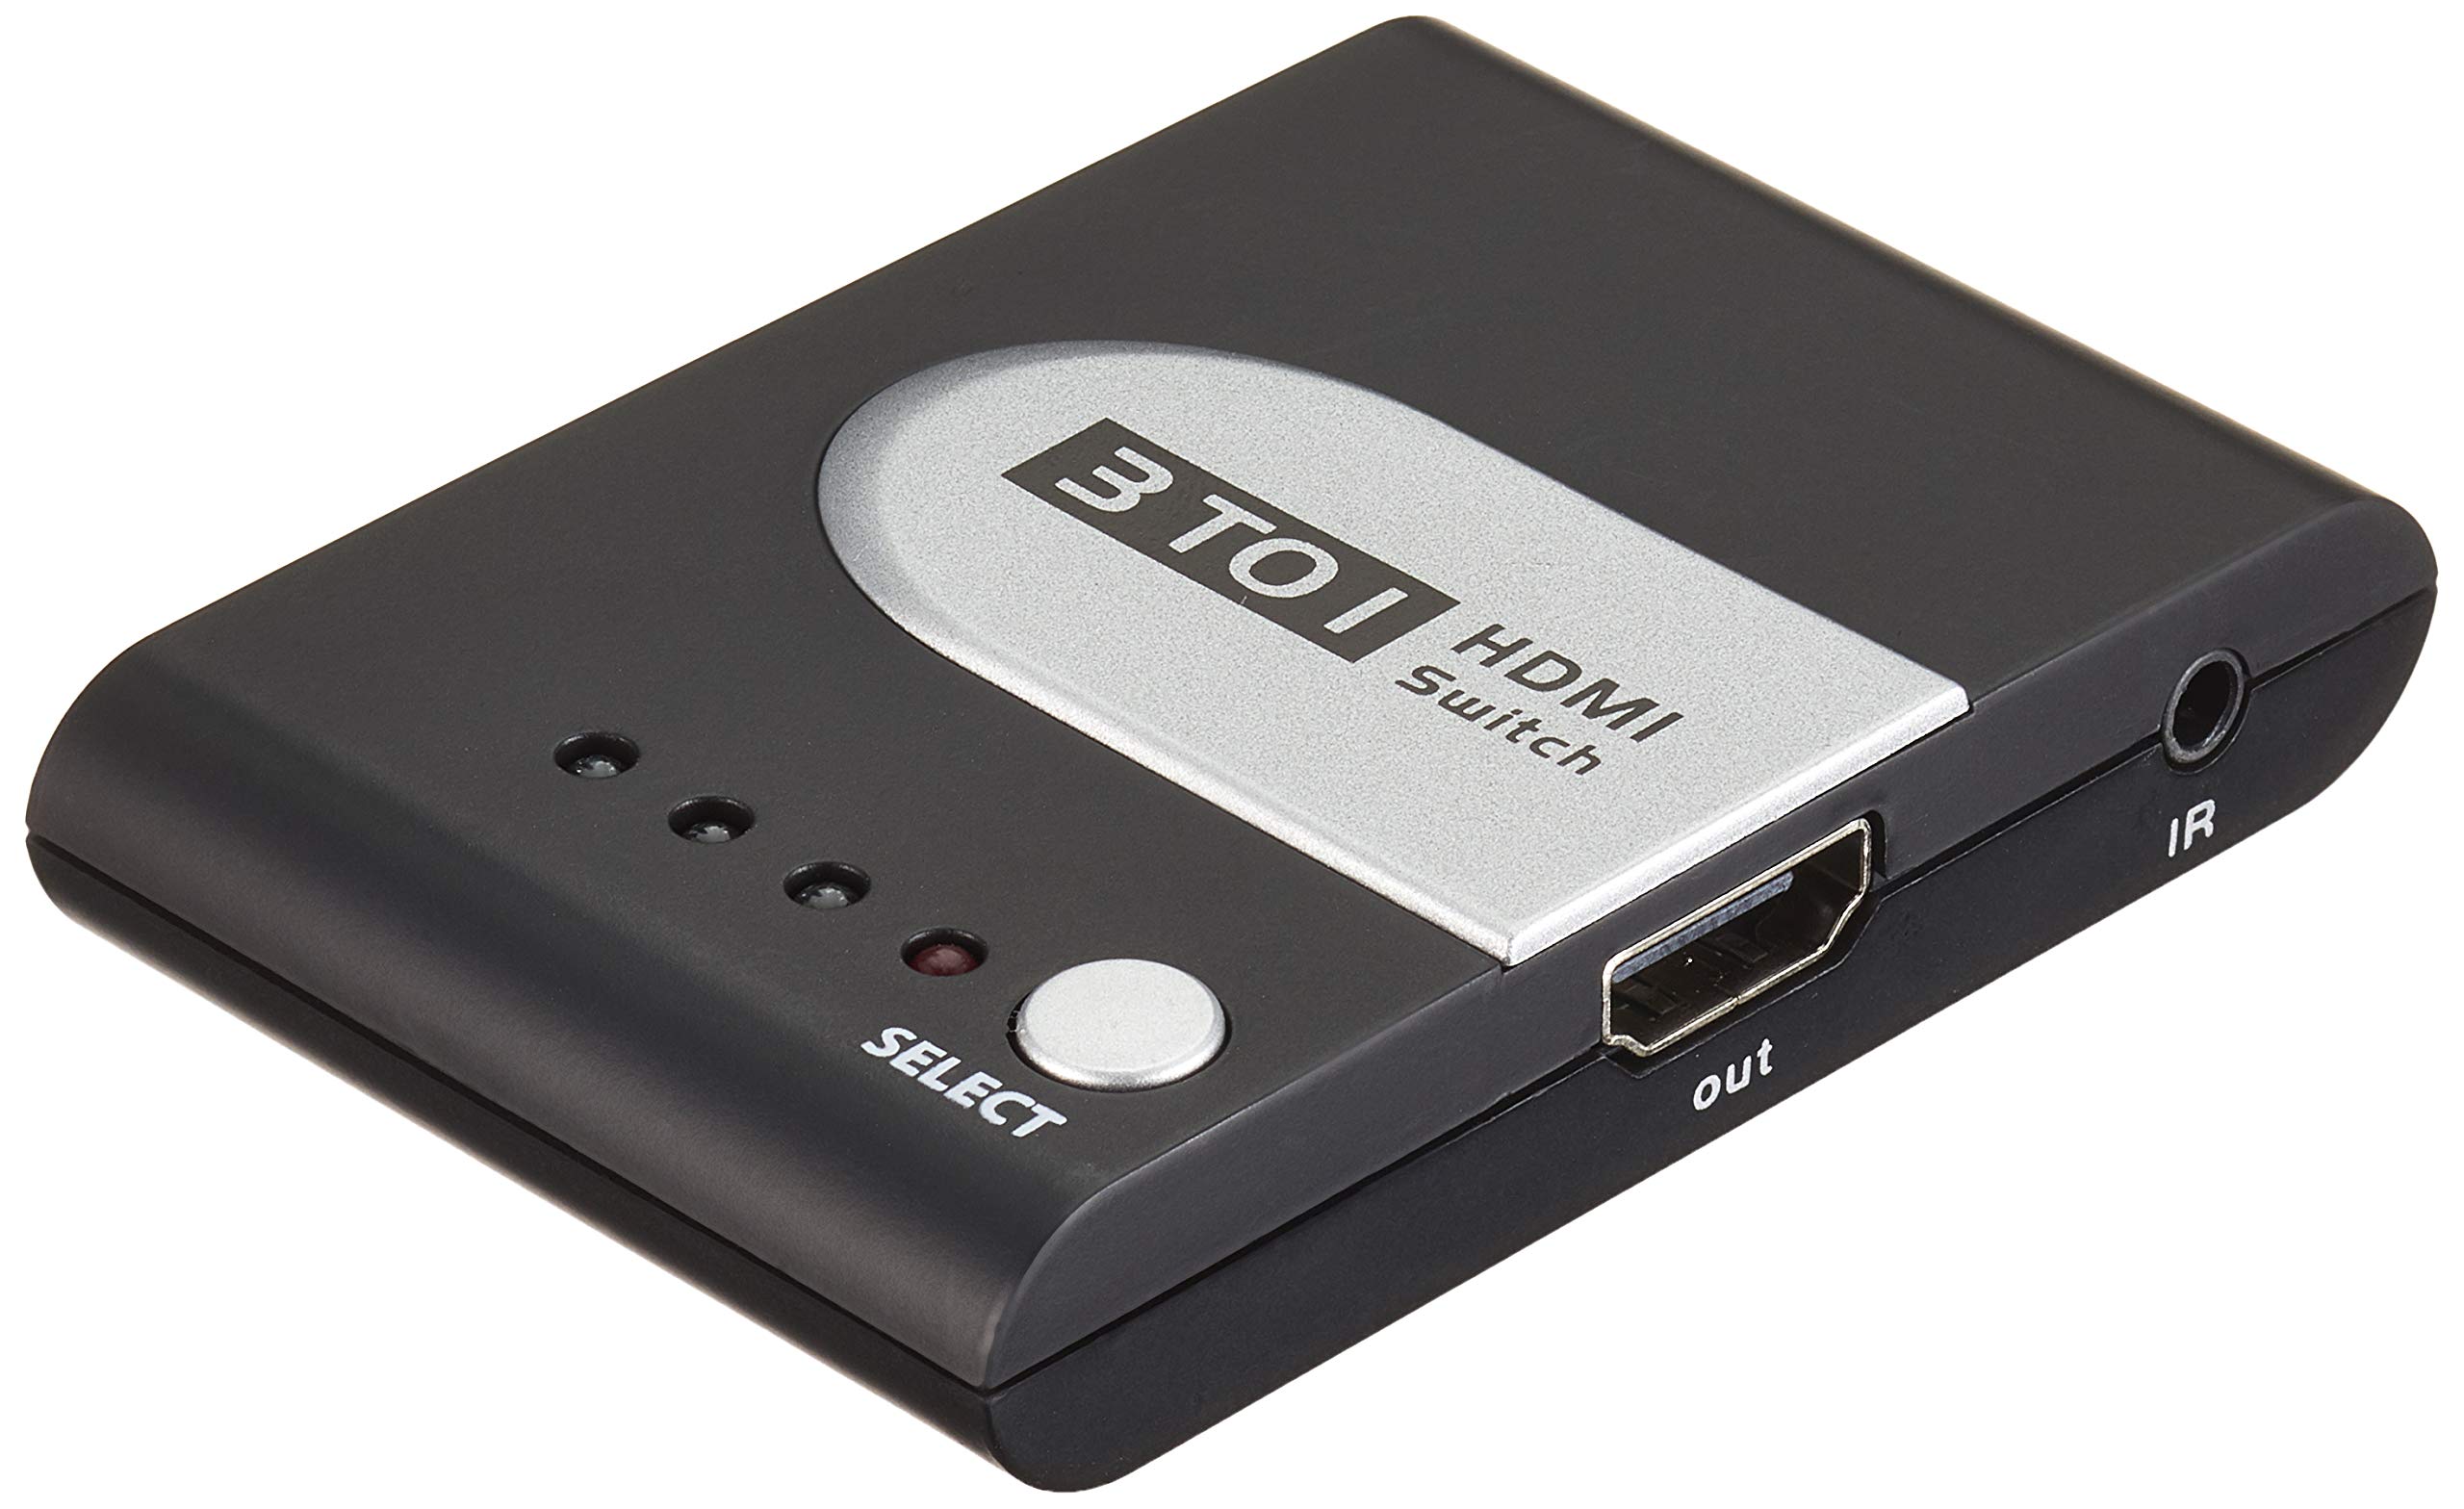 escompte élevé PremiumCord Commutateur HDMI 3:1 Automatique avec statut LED, résolution vidéo Full HD 1080p 60Hz, 3D, HDCP Couleur Noir et Argent BiZV11UaZ Outlet Shop 